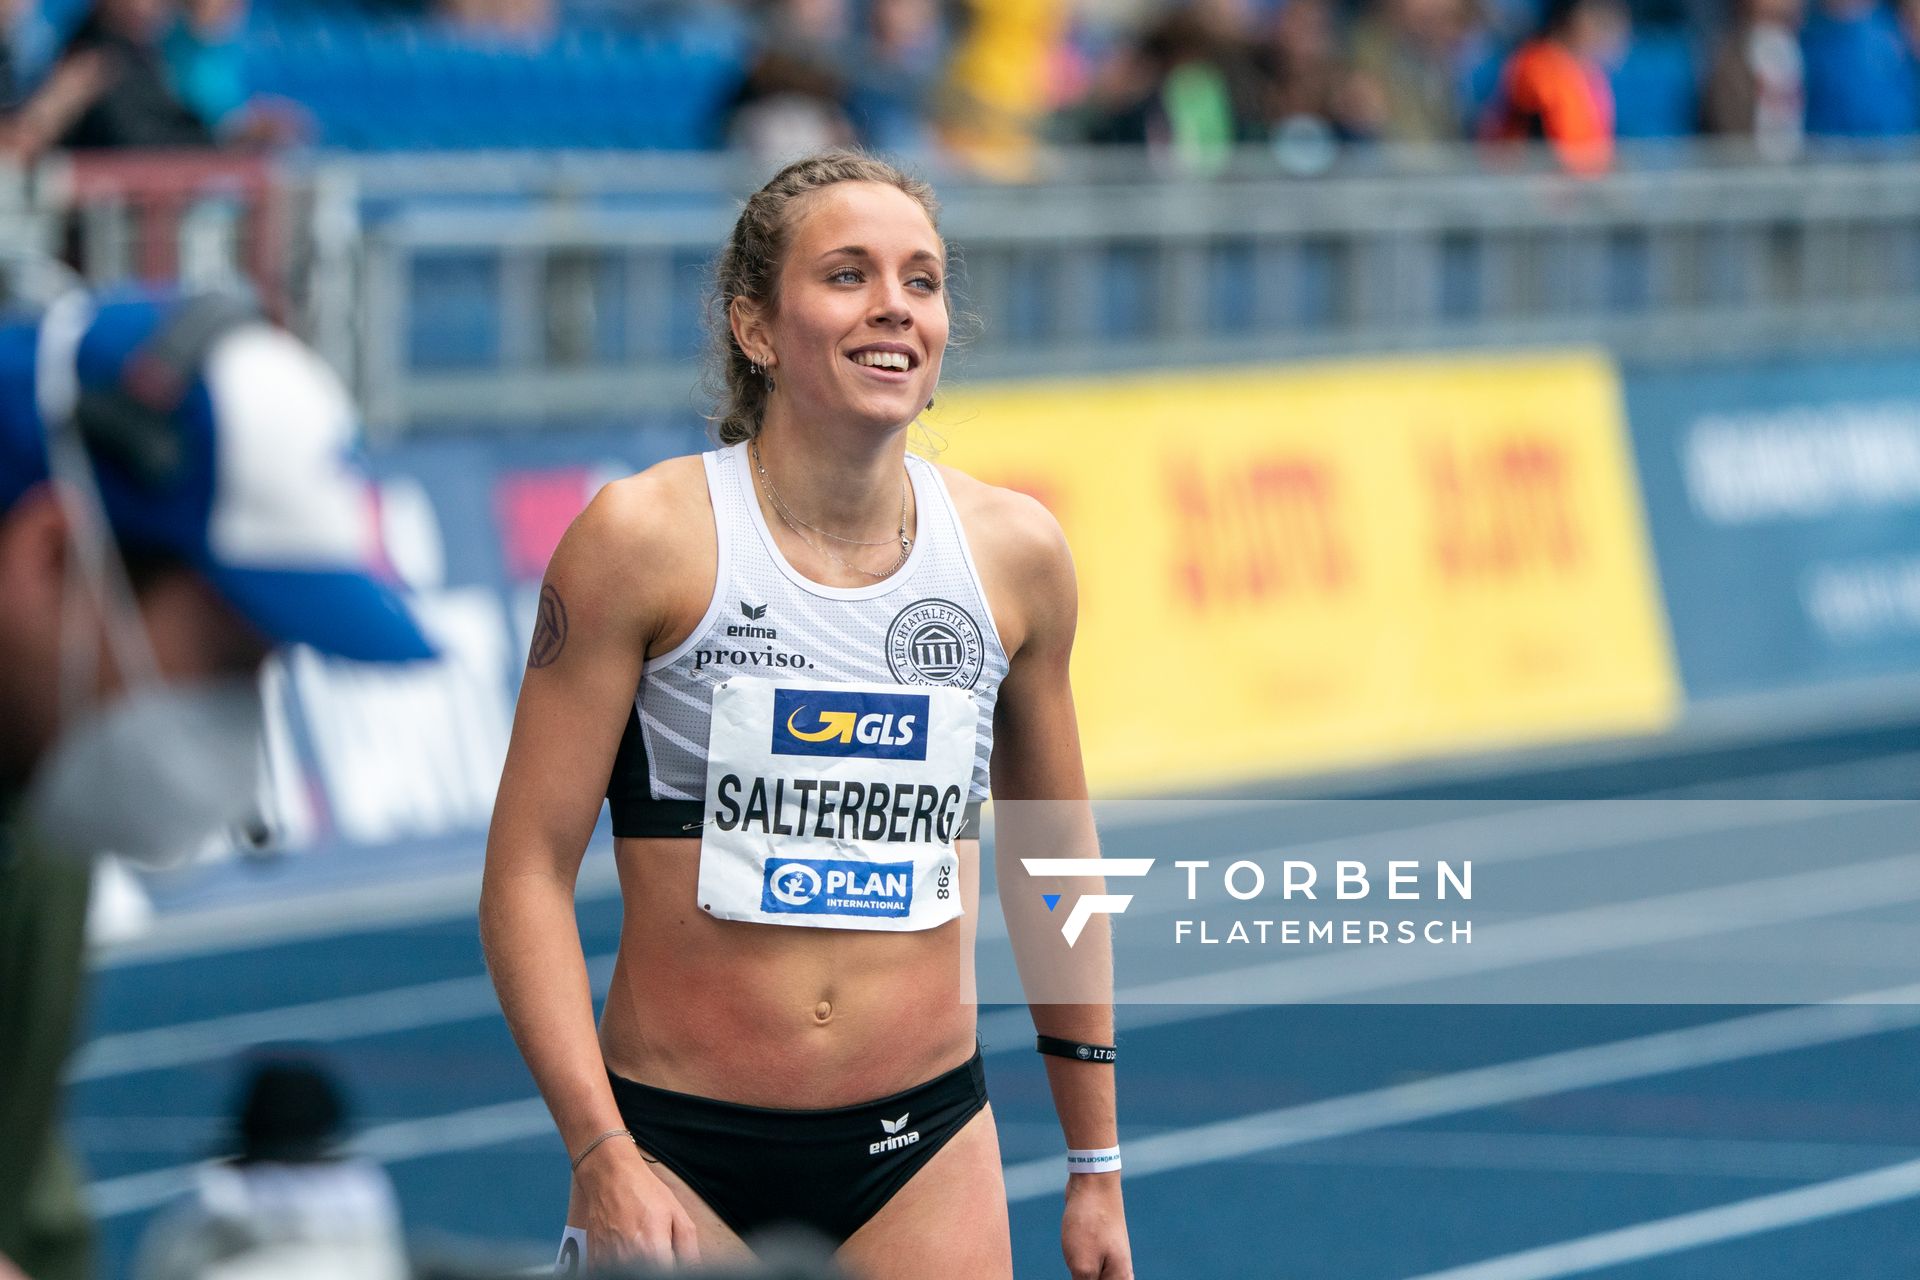 Christine Salterberg (LT DSHS Koeln) am 06.06.2021 waehrend den deutschen Leichtathletik-Meisterschaften 2021 im Eintracht-Stadion in Braunschweig